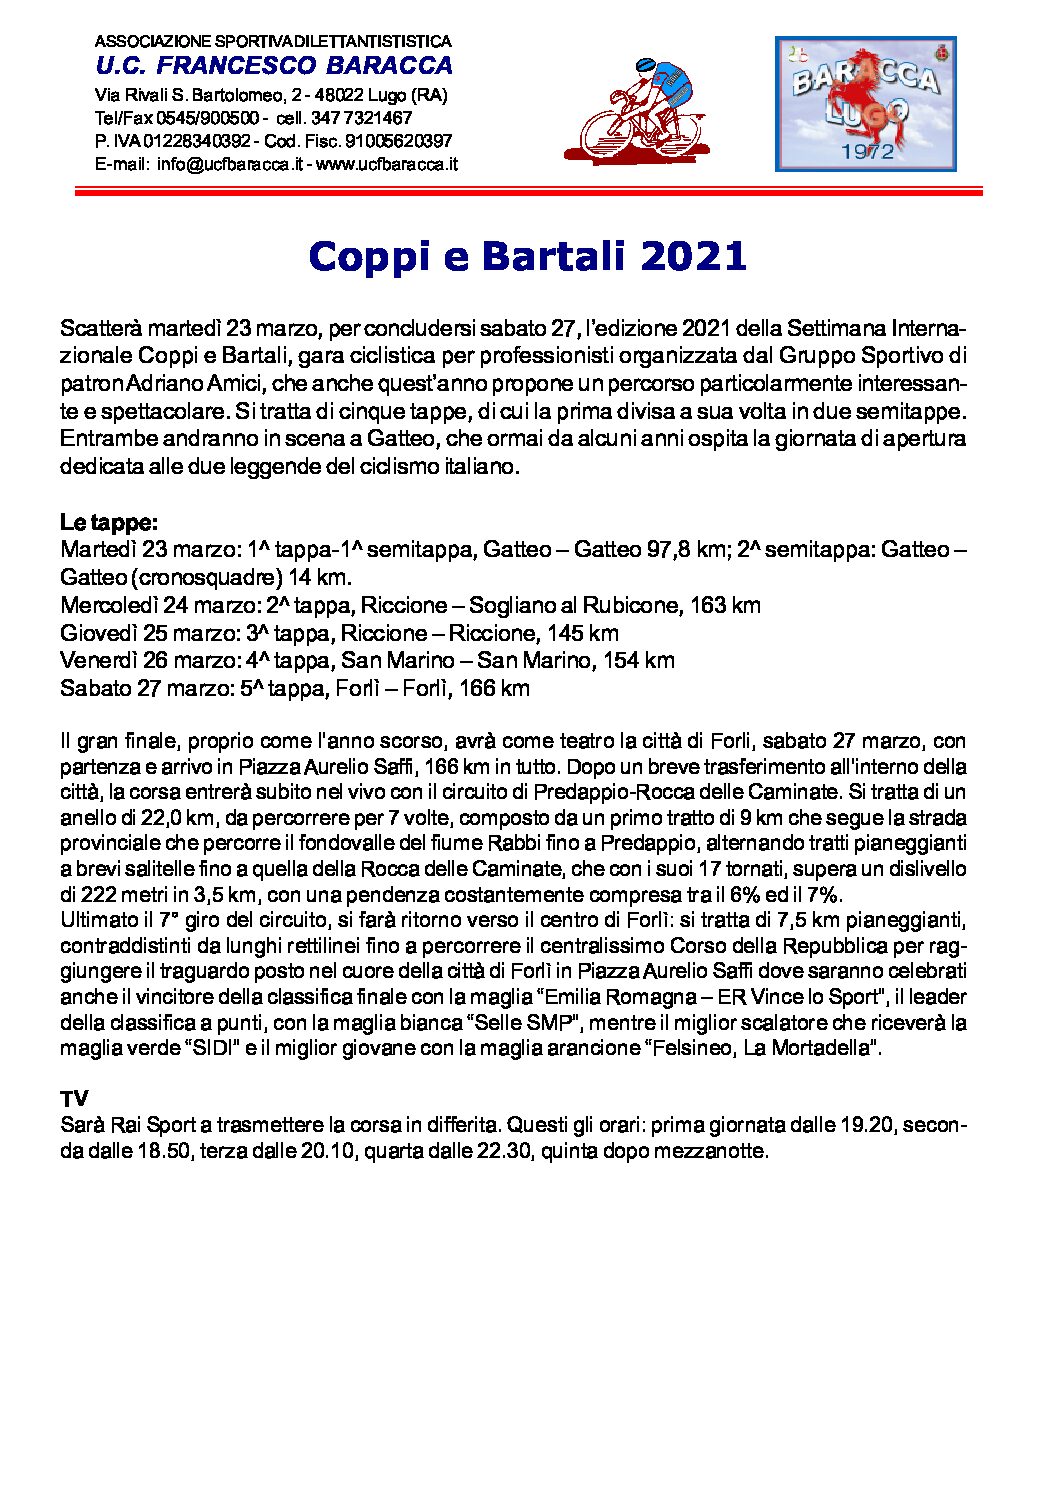 Coppi e Bartali 2021 pdf